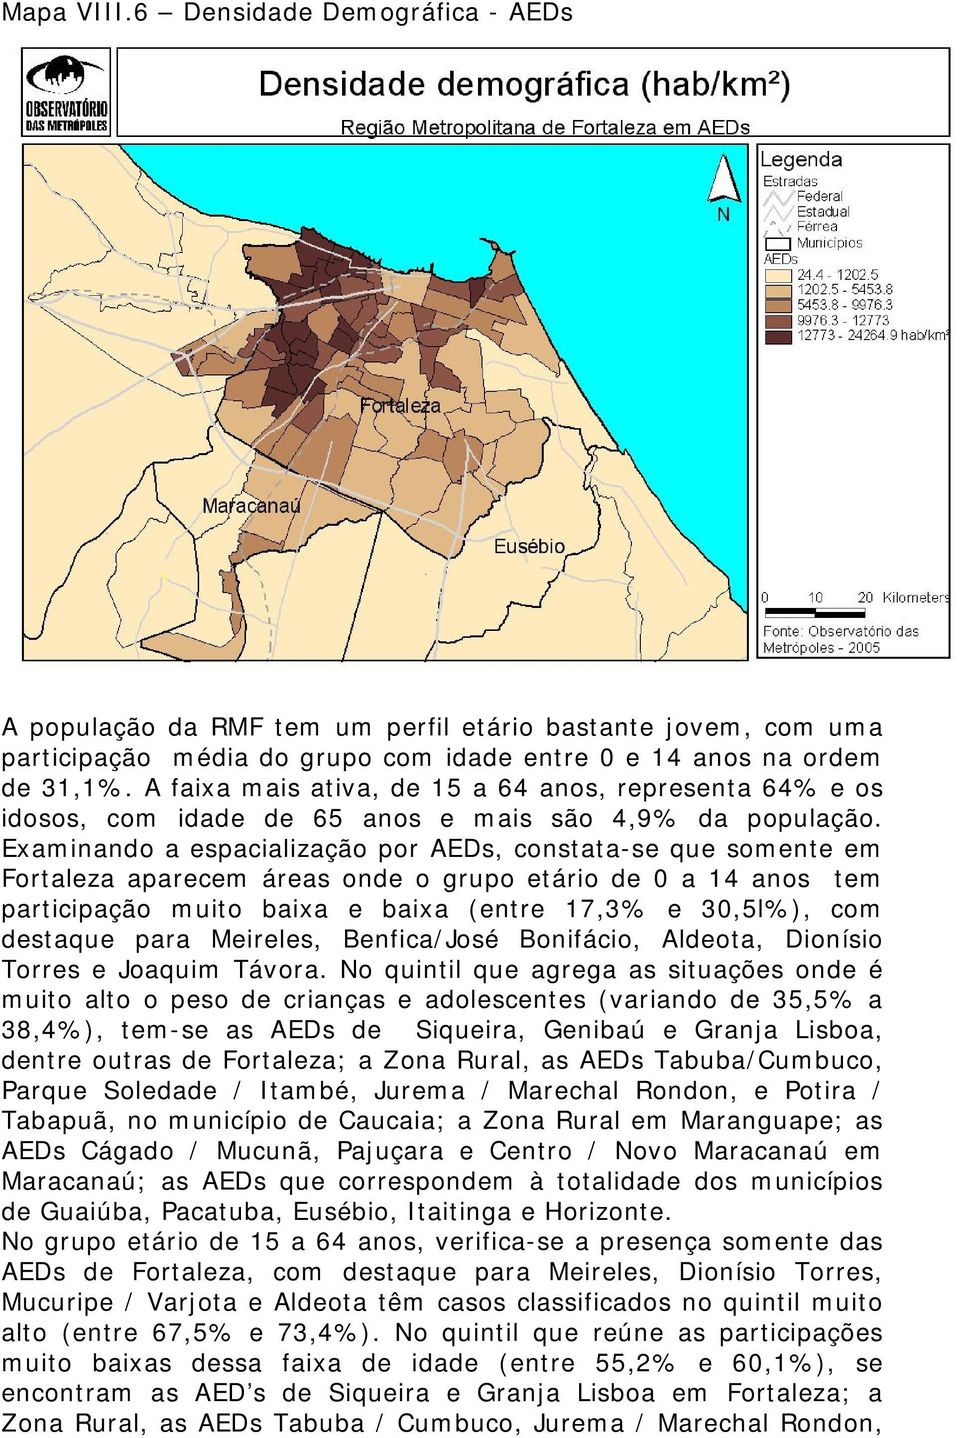 Examinando a espacialização por AEDs, constata-se que somente em Fortaleza aparecem áreas onde o grupo etário de 0 a 14 anos tem participação muito baixa e baixa (entre 17,3% e 30,5l%), com destaque